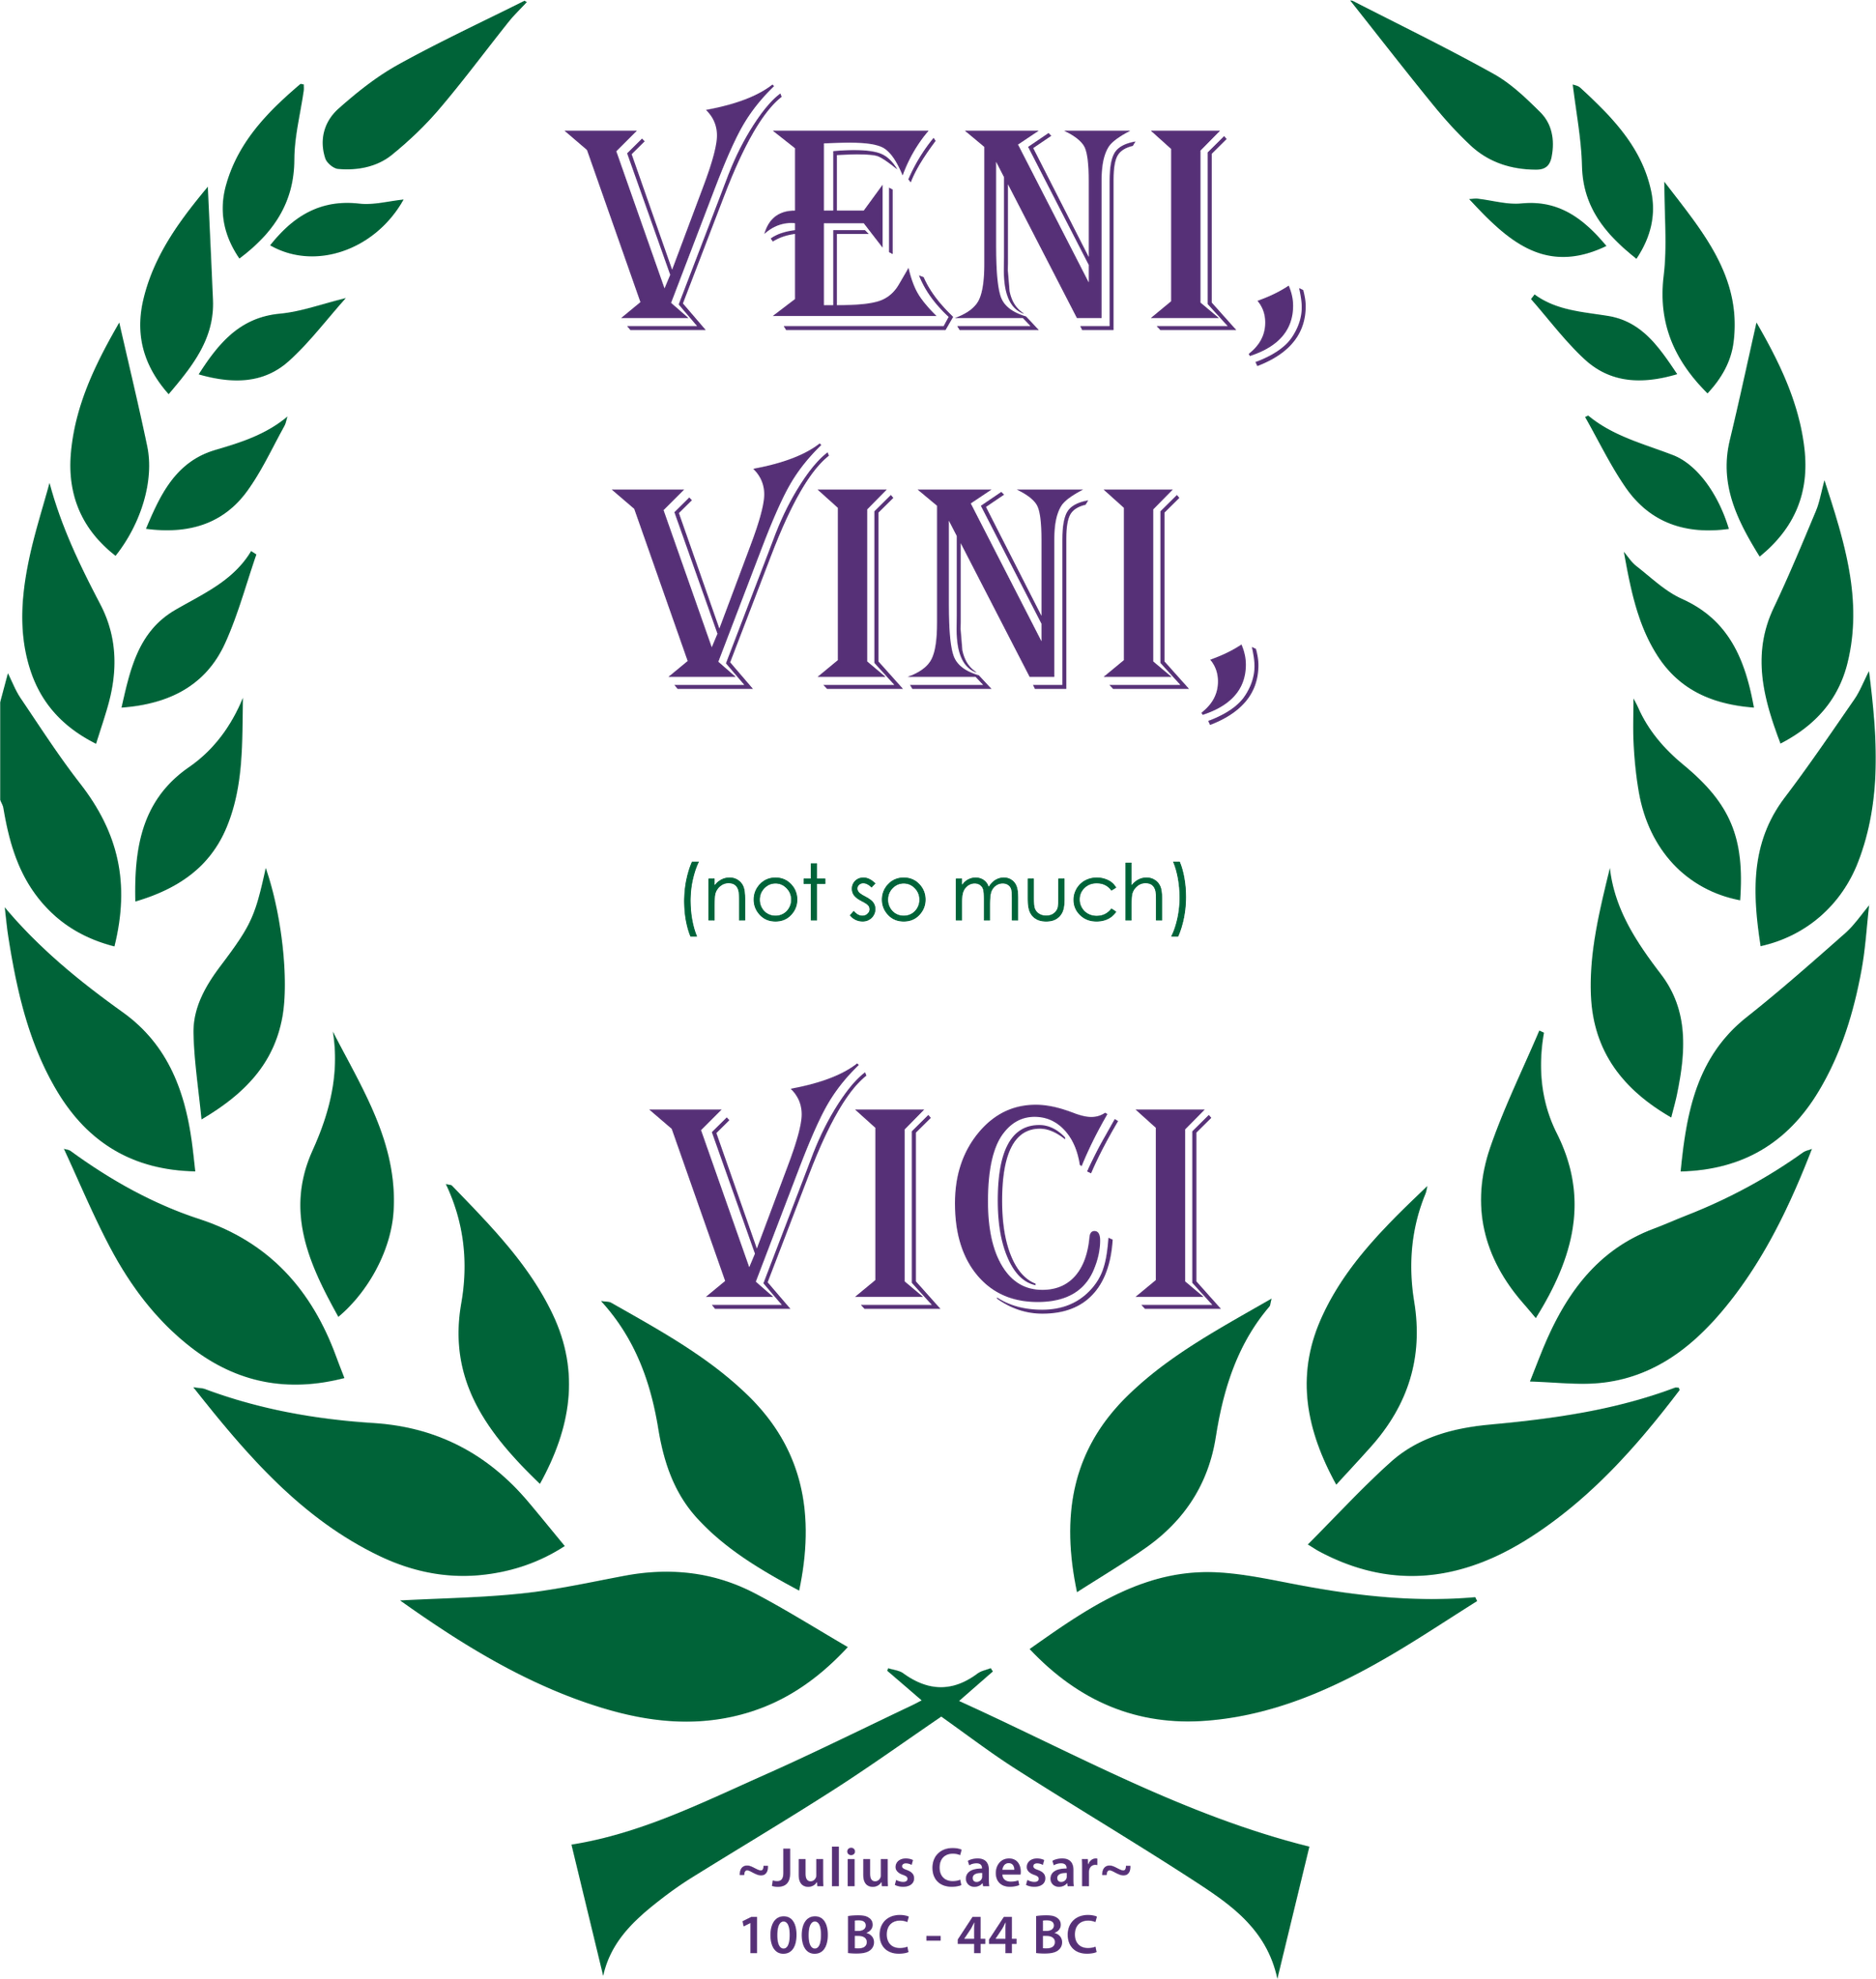 Vini Vici - Veni Vidi Vici, Releases